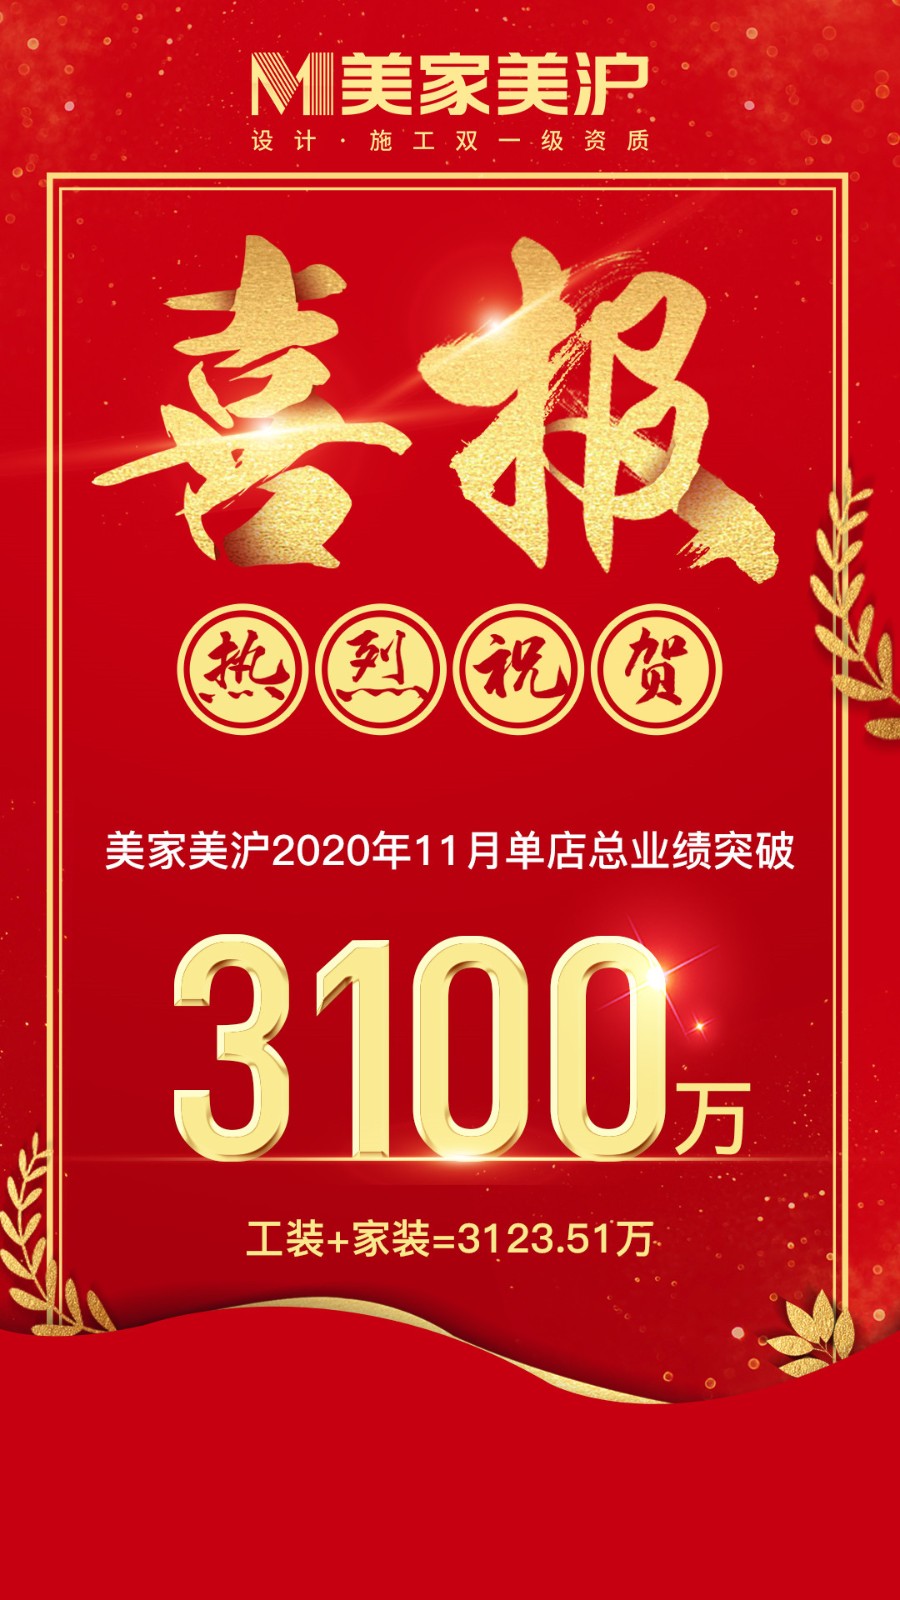 美家美沪双11首创新高，门店单月业绩直接突破3100万！